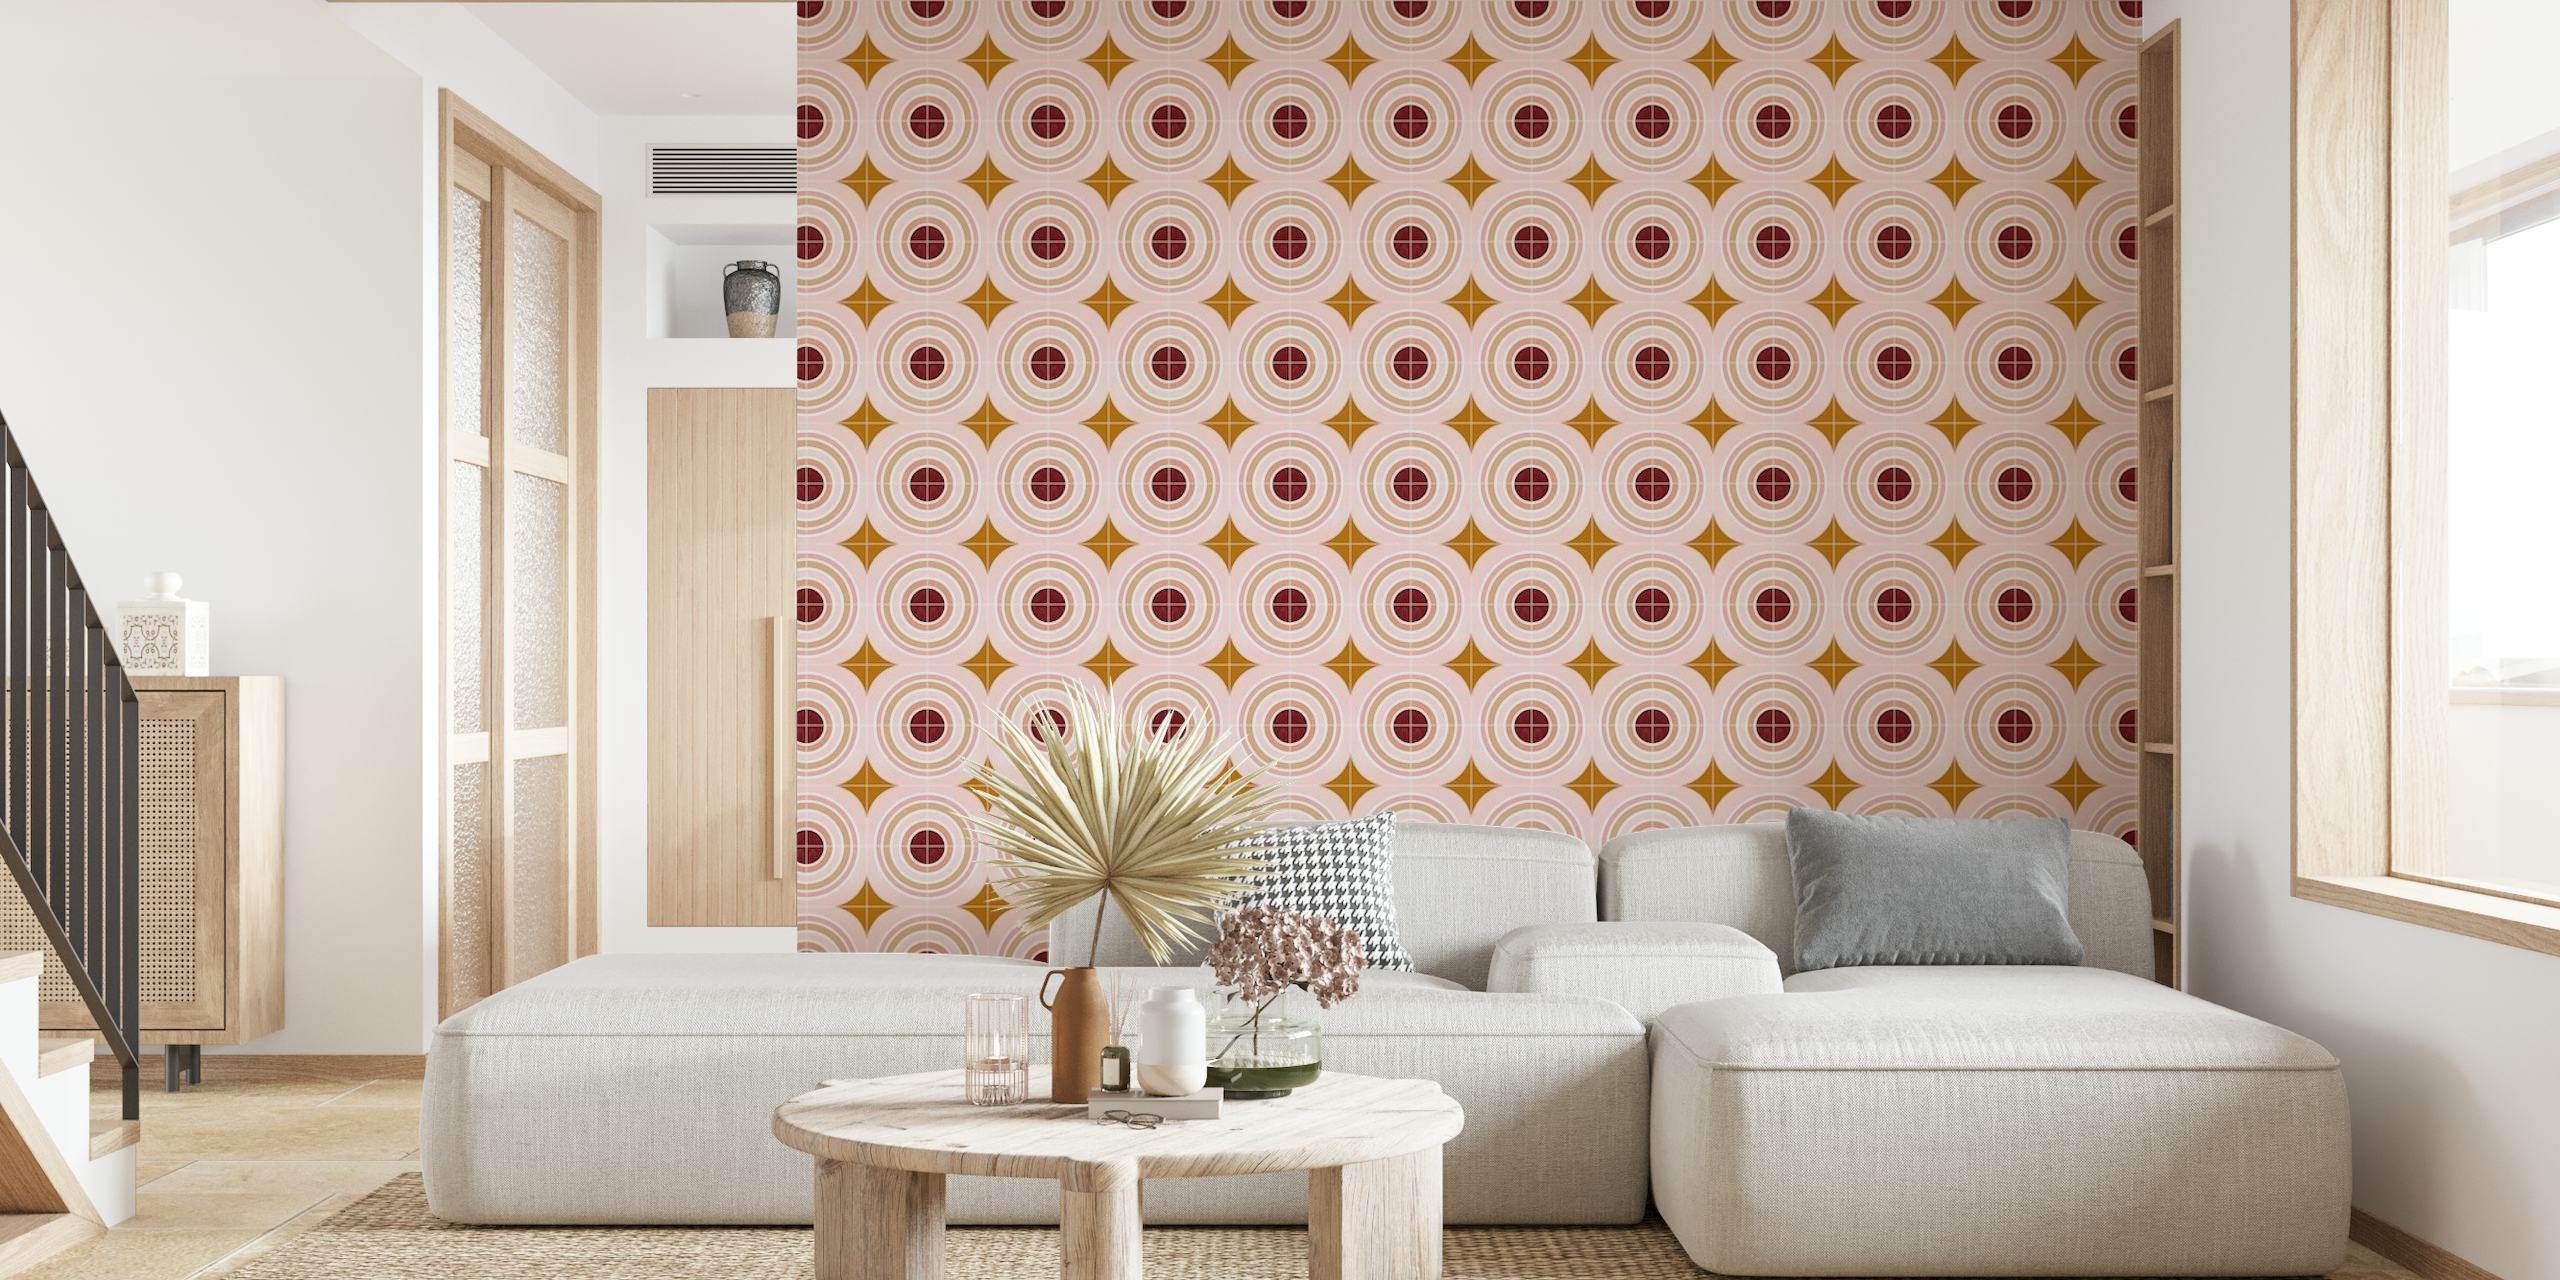 Mural de pared Target Tiles con patrones de círculos concéntricos en suaves tonos rosa y dorado.